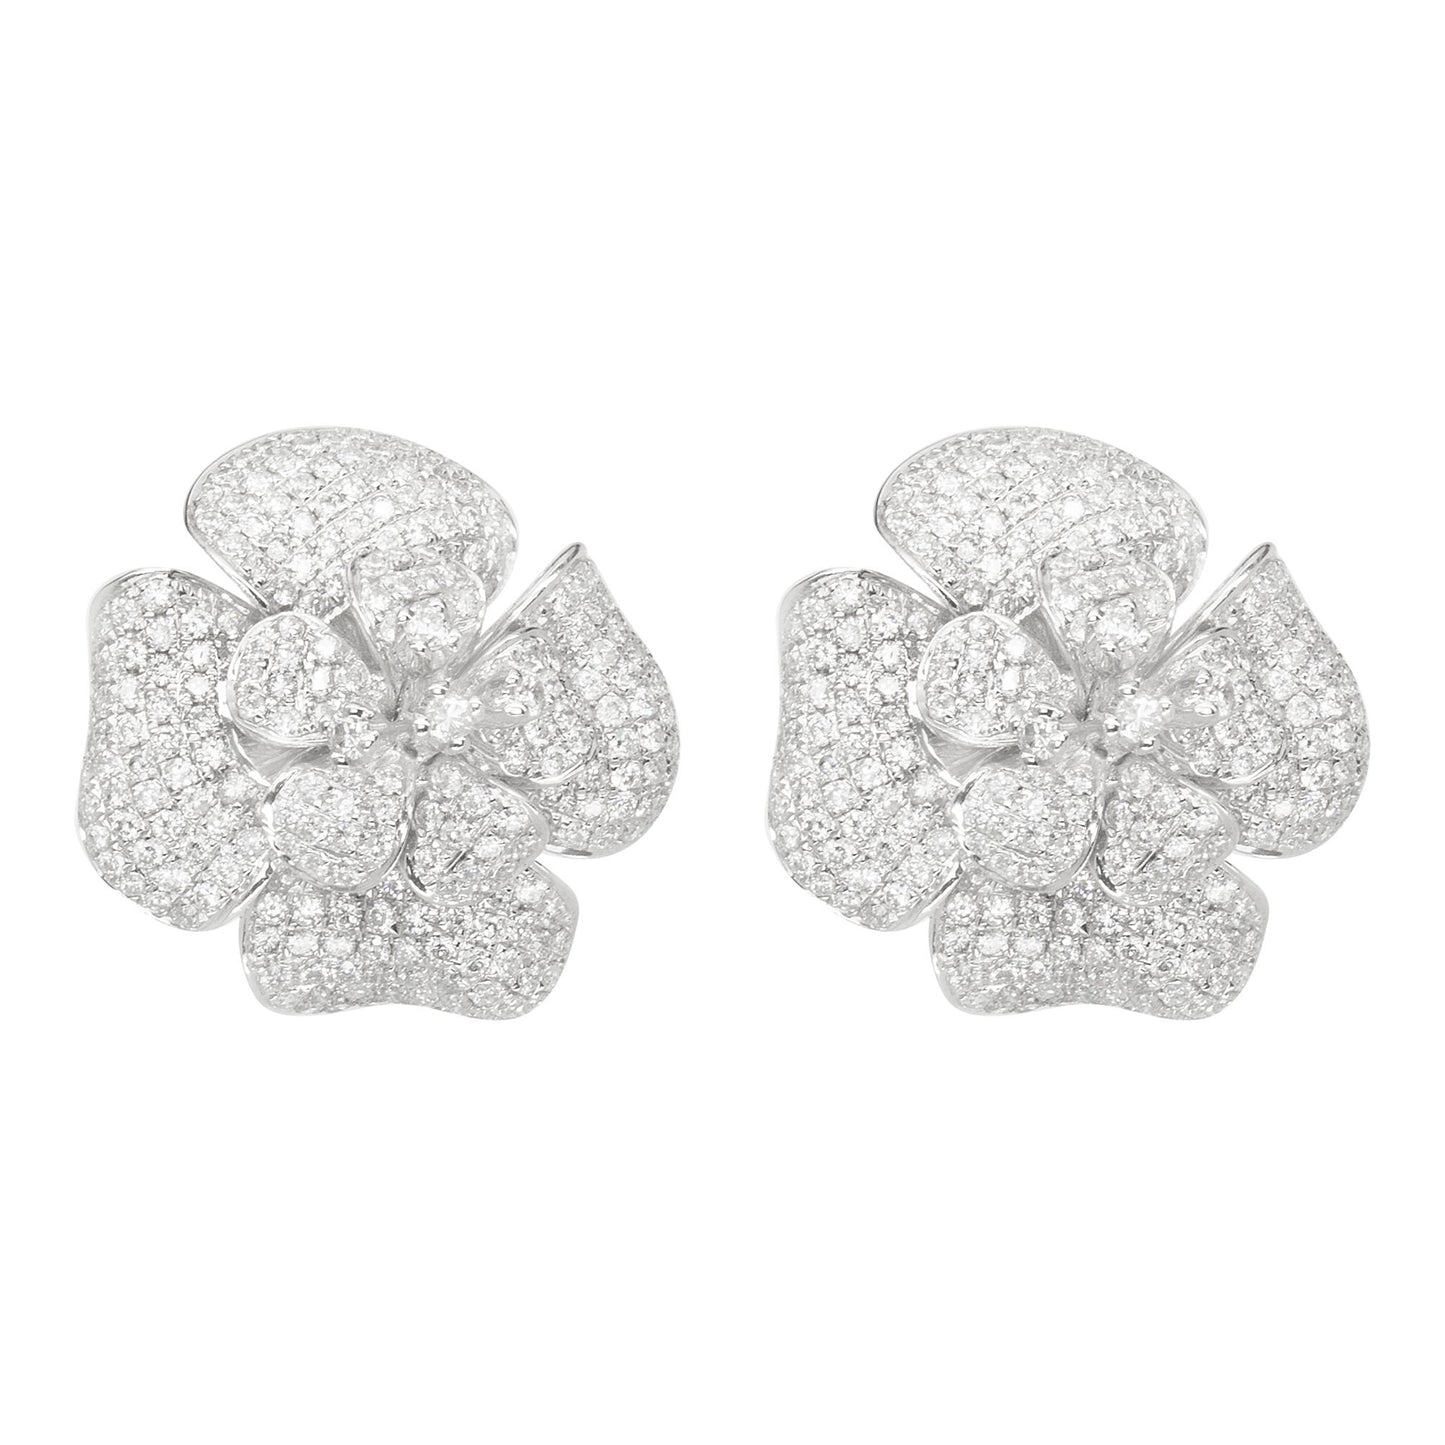 14K White Gold Floral-Inspired Diamond Earrings